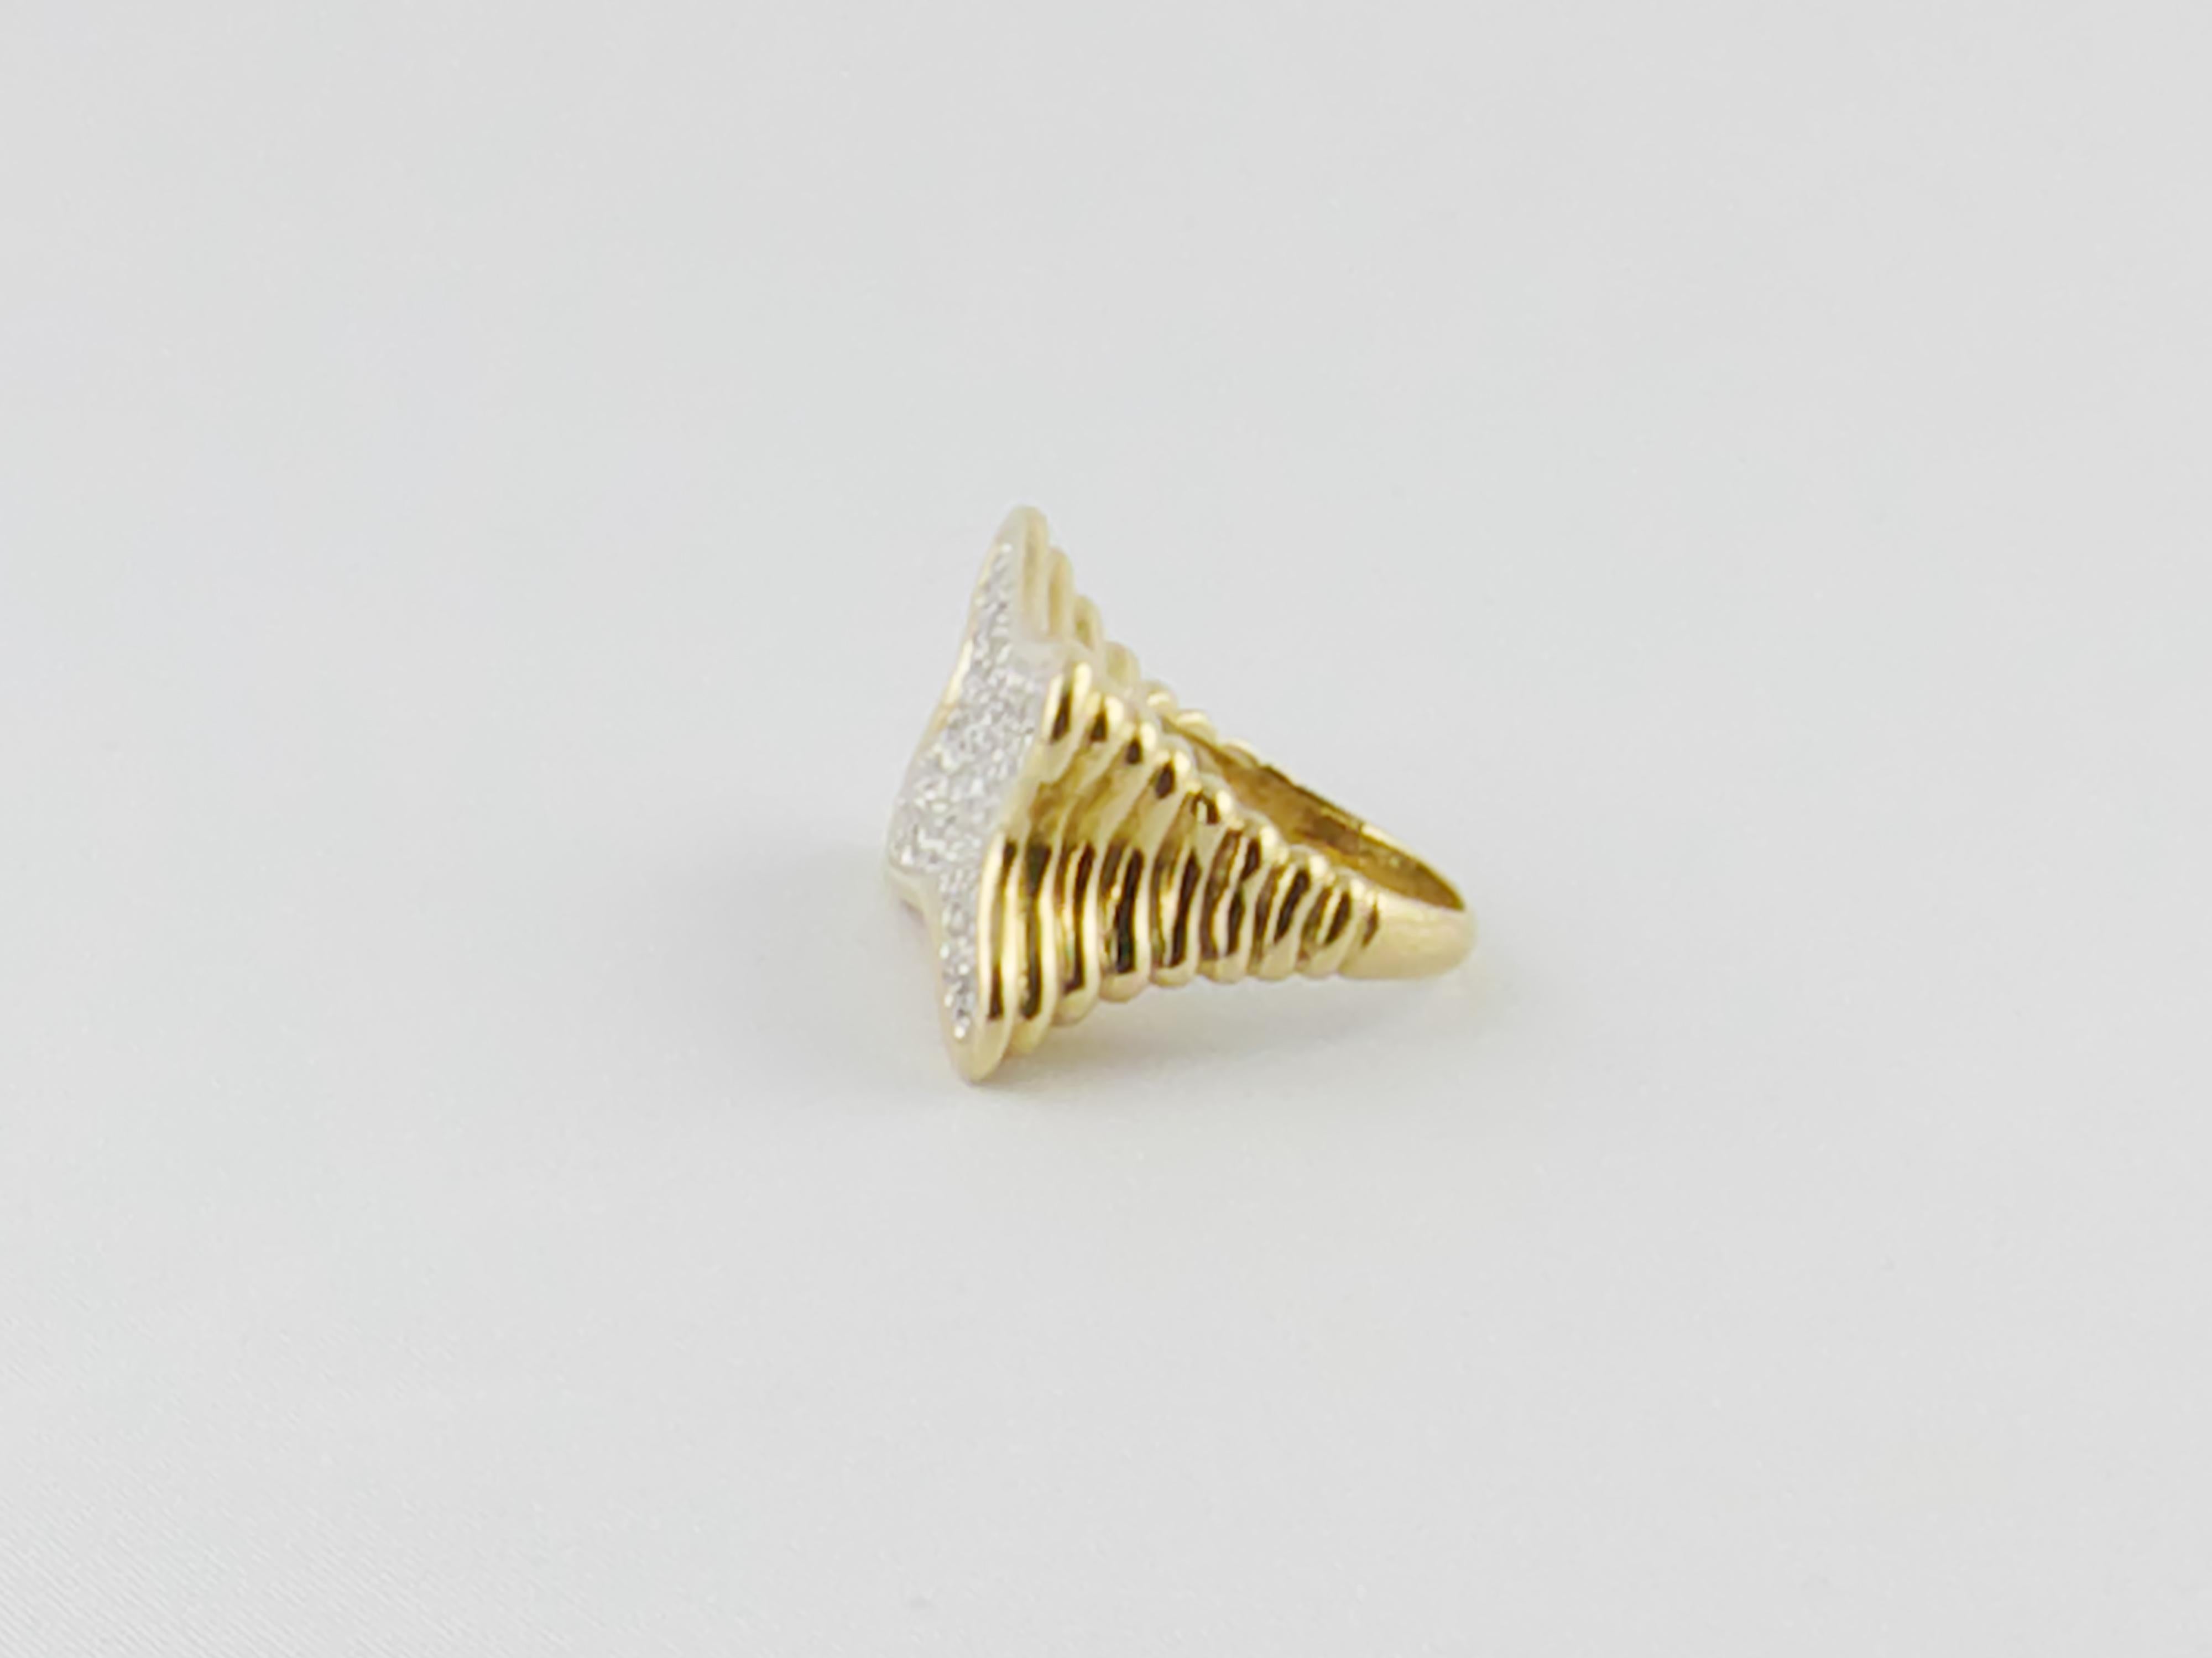 Dieser markante und imposante Freiformring aus 18 Karat Gelbgold der 1970er Jahre mit einem Diamantpavé von ca. 1,30 Karat hat einen geriffelten, exquisit gestalteten und gearbeiteten Schaft.
Dieser moderne und faszinierende Ring hat  ein